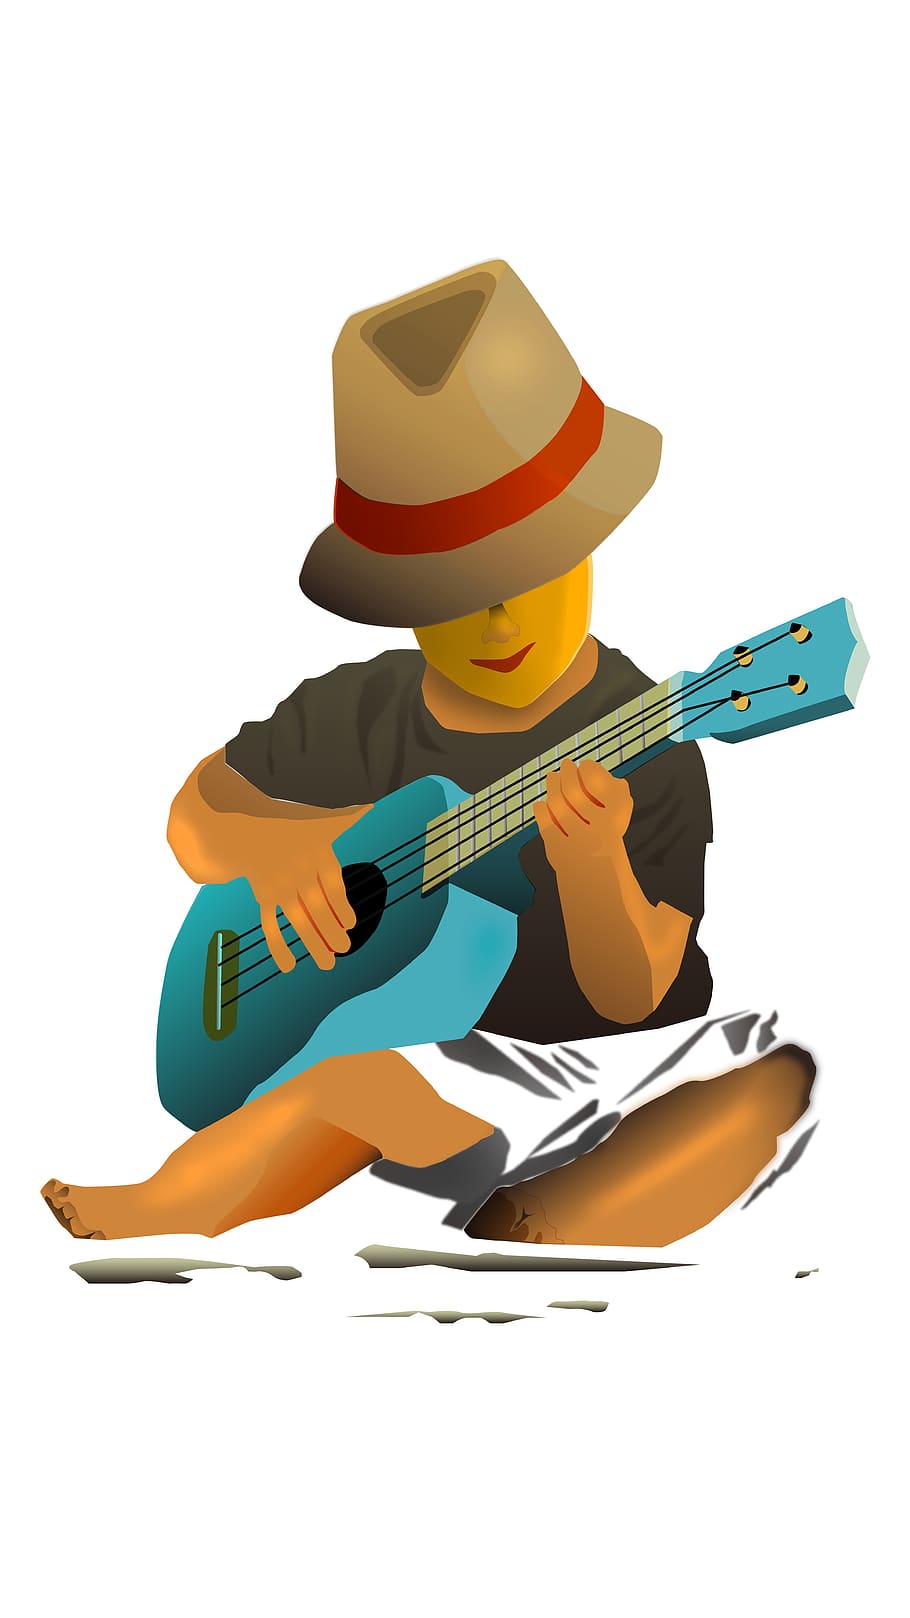 jogar, ukulele, guitarra, menino, praia, persoon, cantor, entretenimento, verão, música